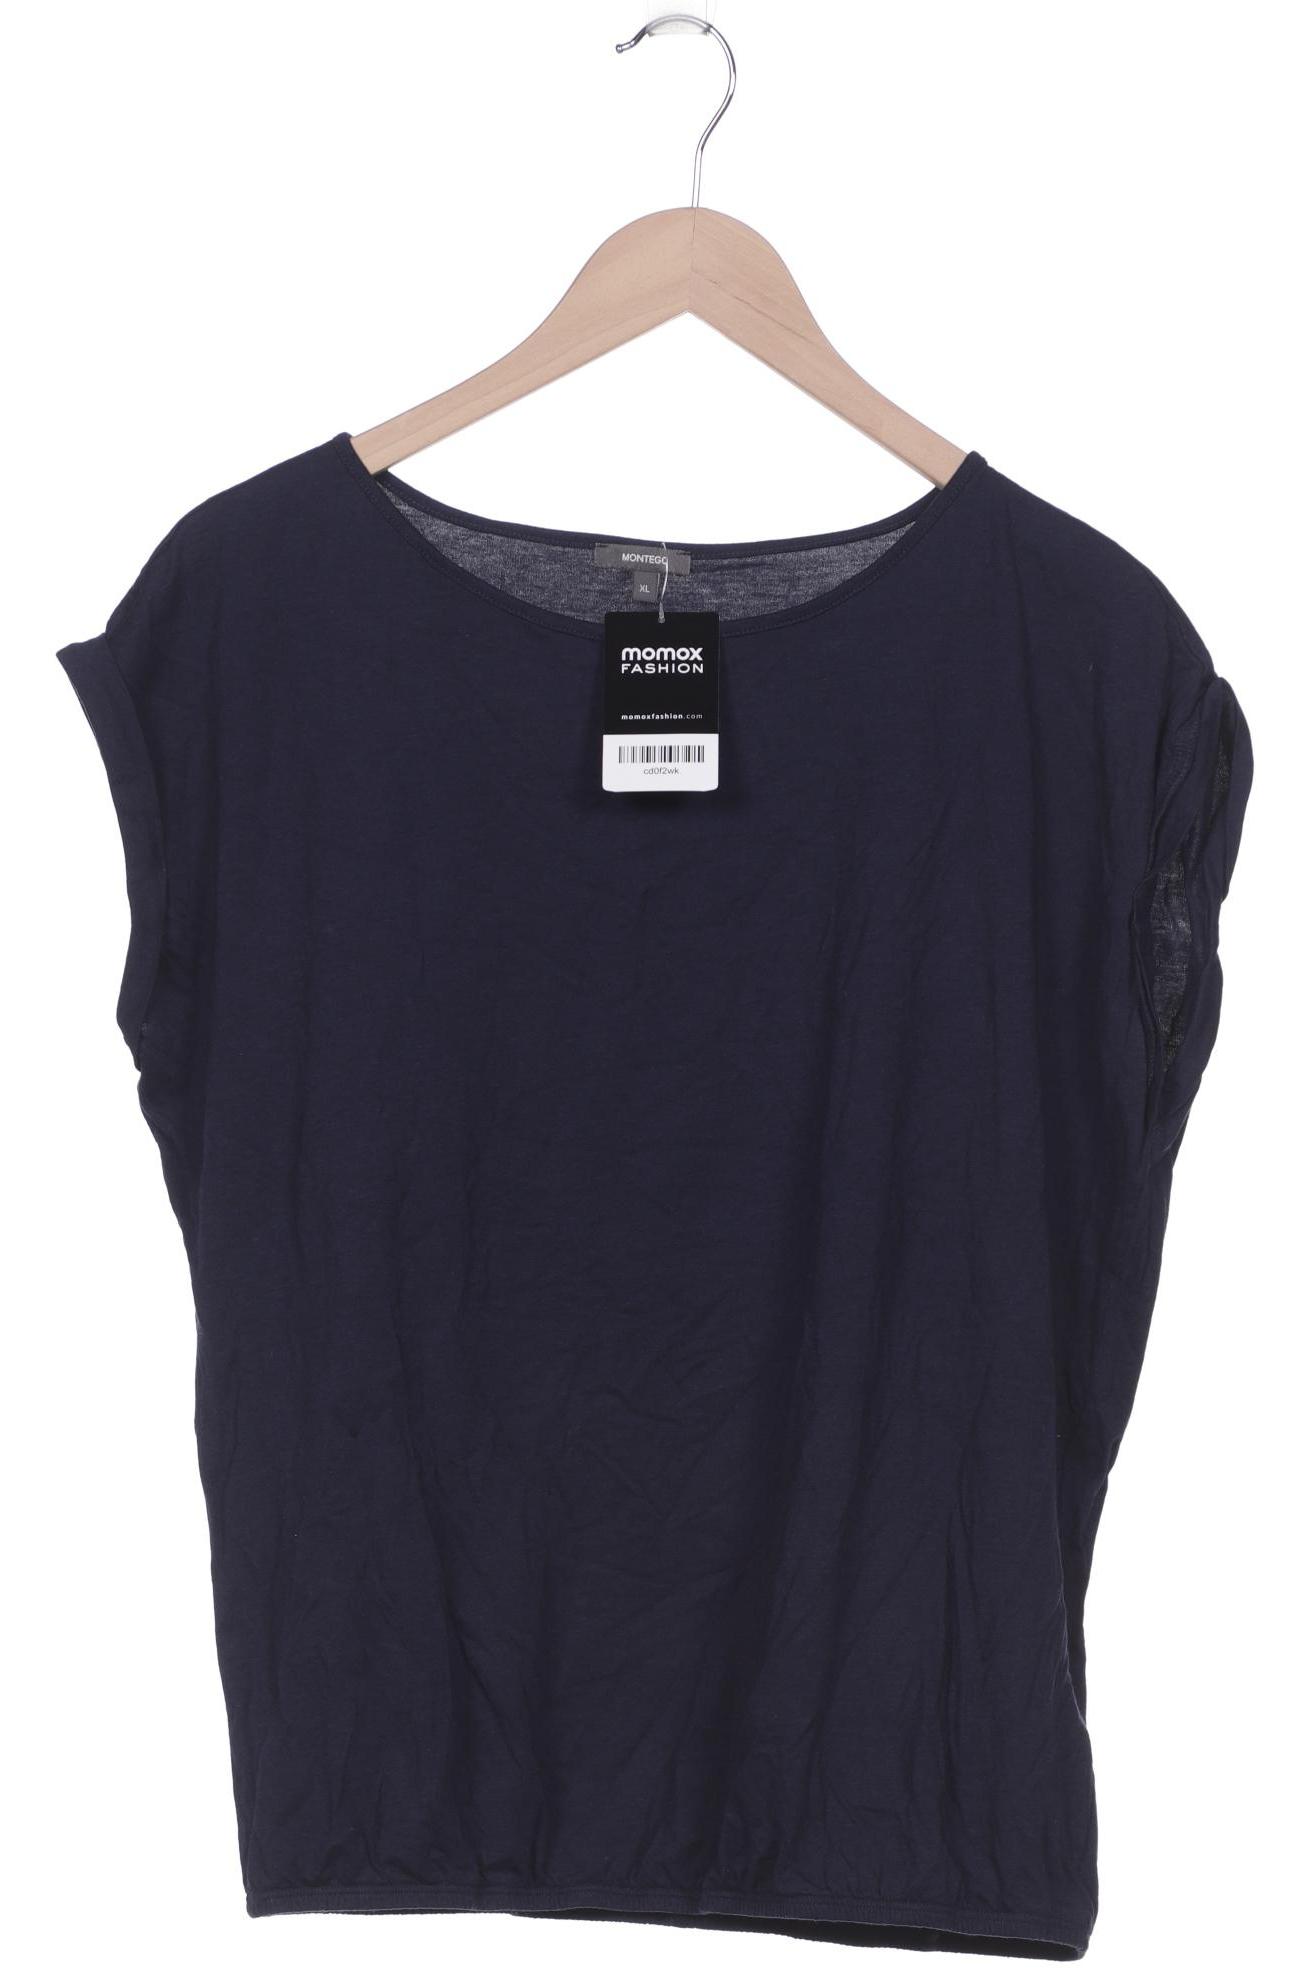 Montego Damen T-Shirt, marineblau von montego